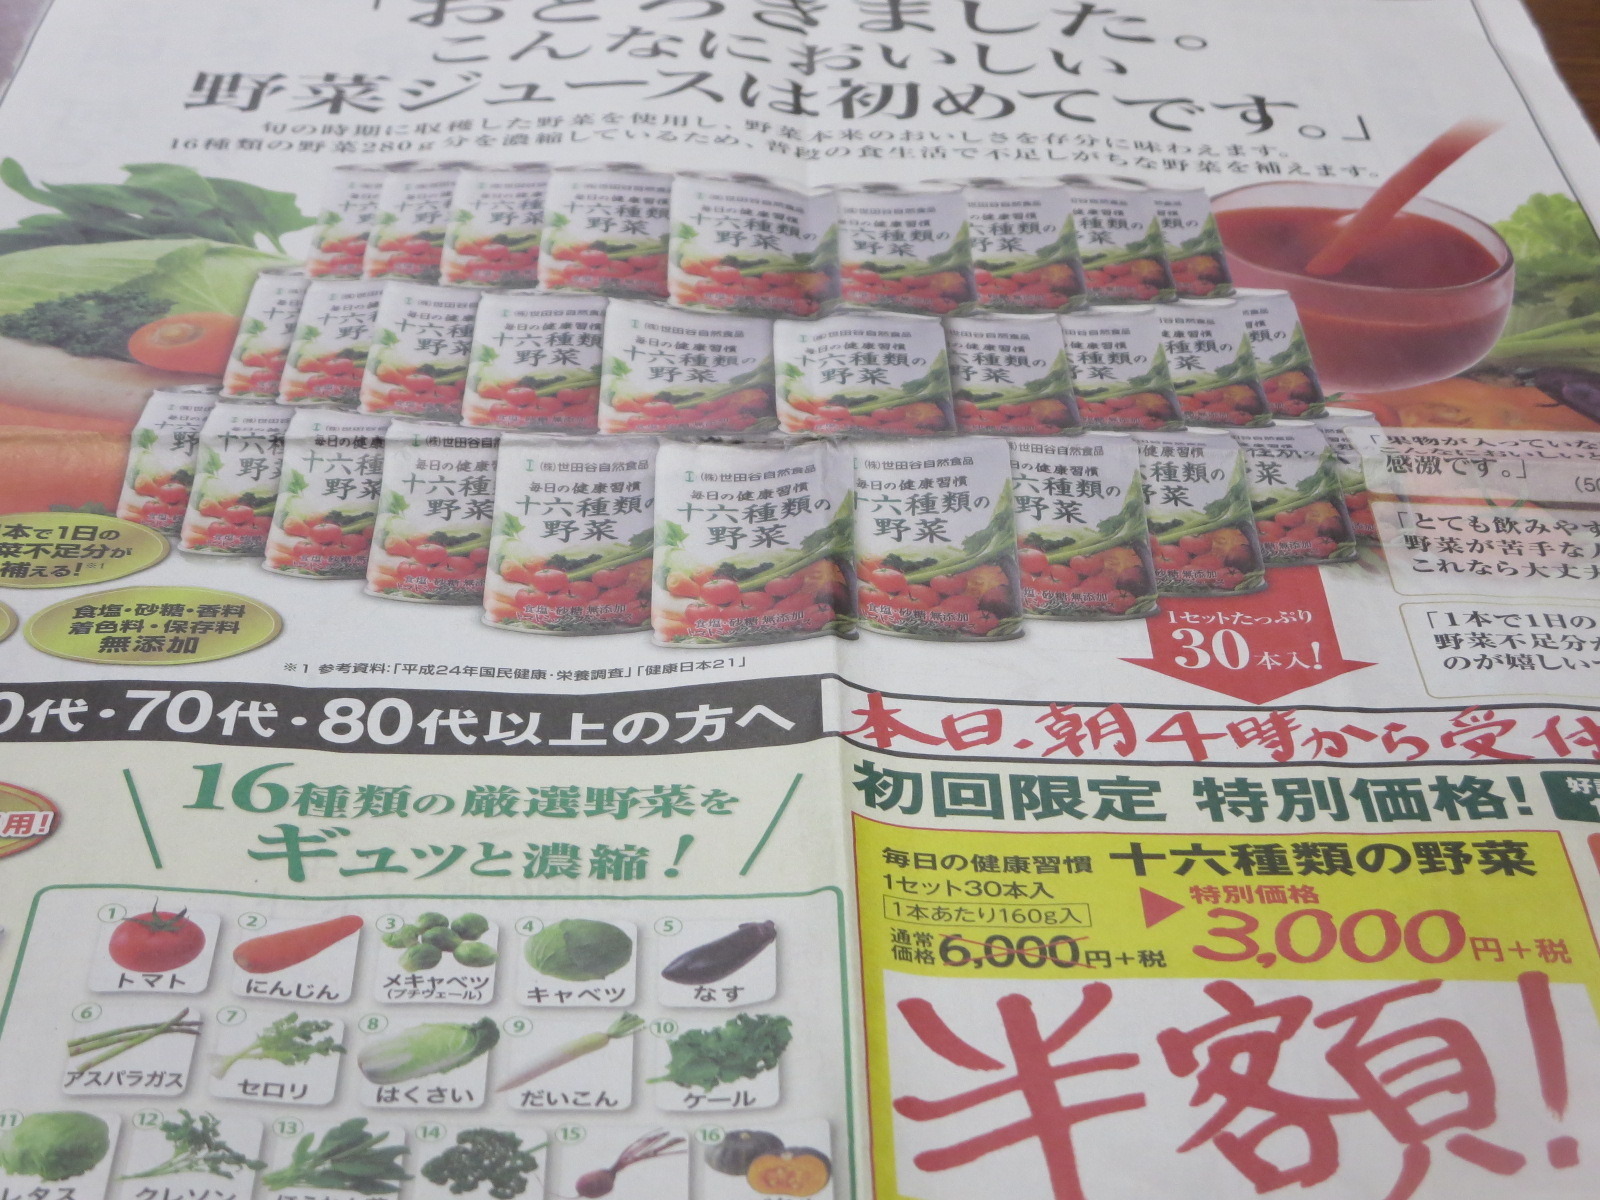 せつでんの日記 世田谷自然食品の 十六種類の野菜 新聞全面広告 既読